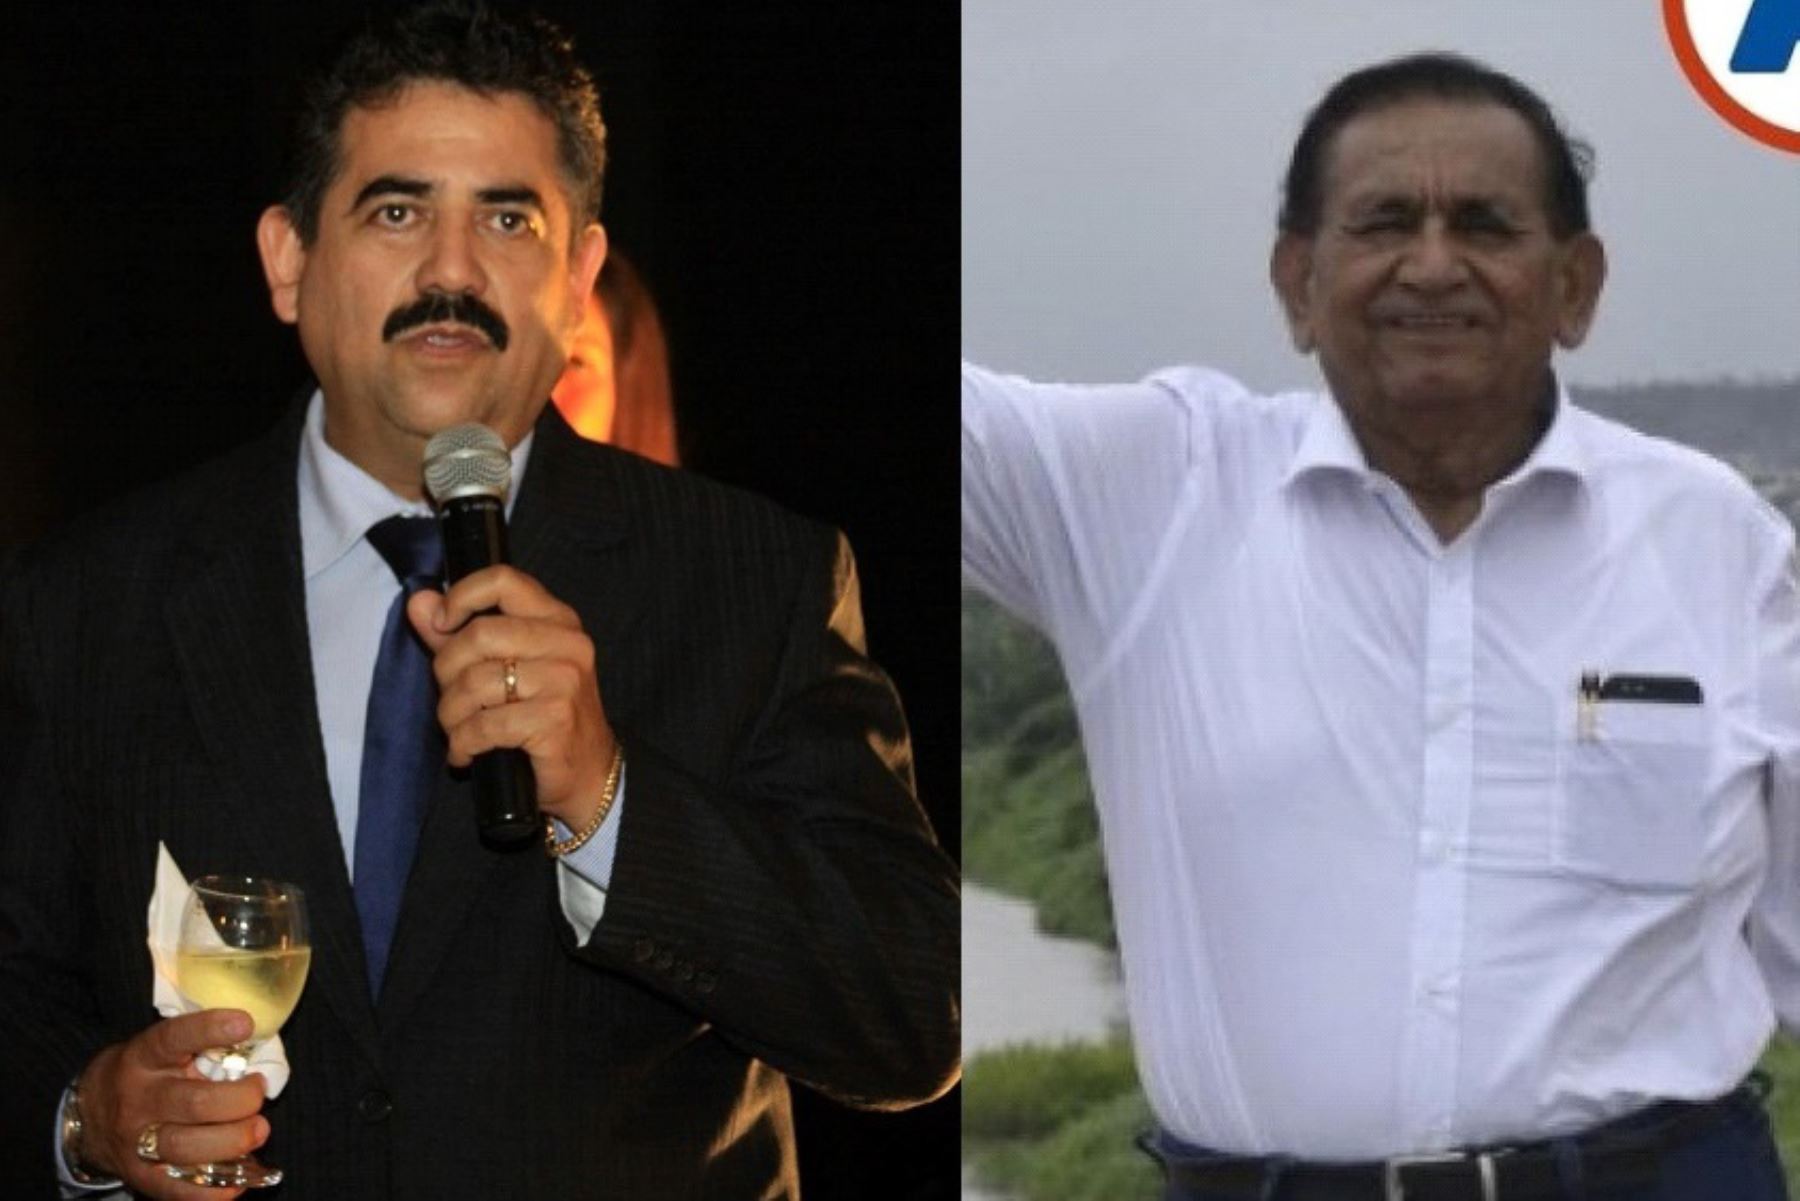 Manuel Merino de Lama y Napoleón Puño Lecarnaqué son los virtuales congresistas electos por Tumbes, de acuerdo a los resultados de la ONPE. ANDINA/Difusión